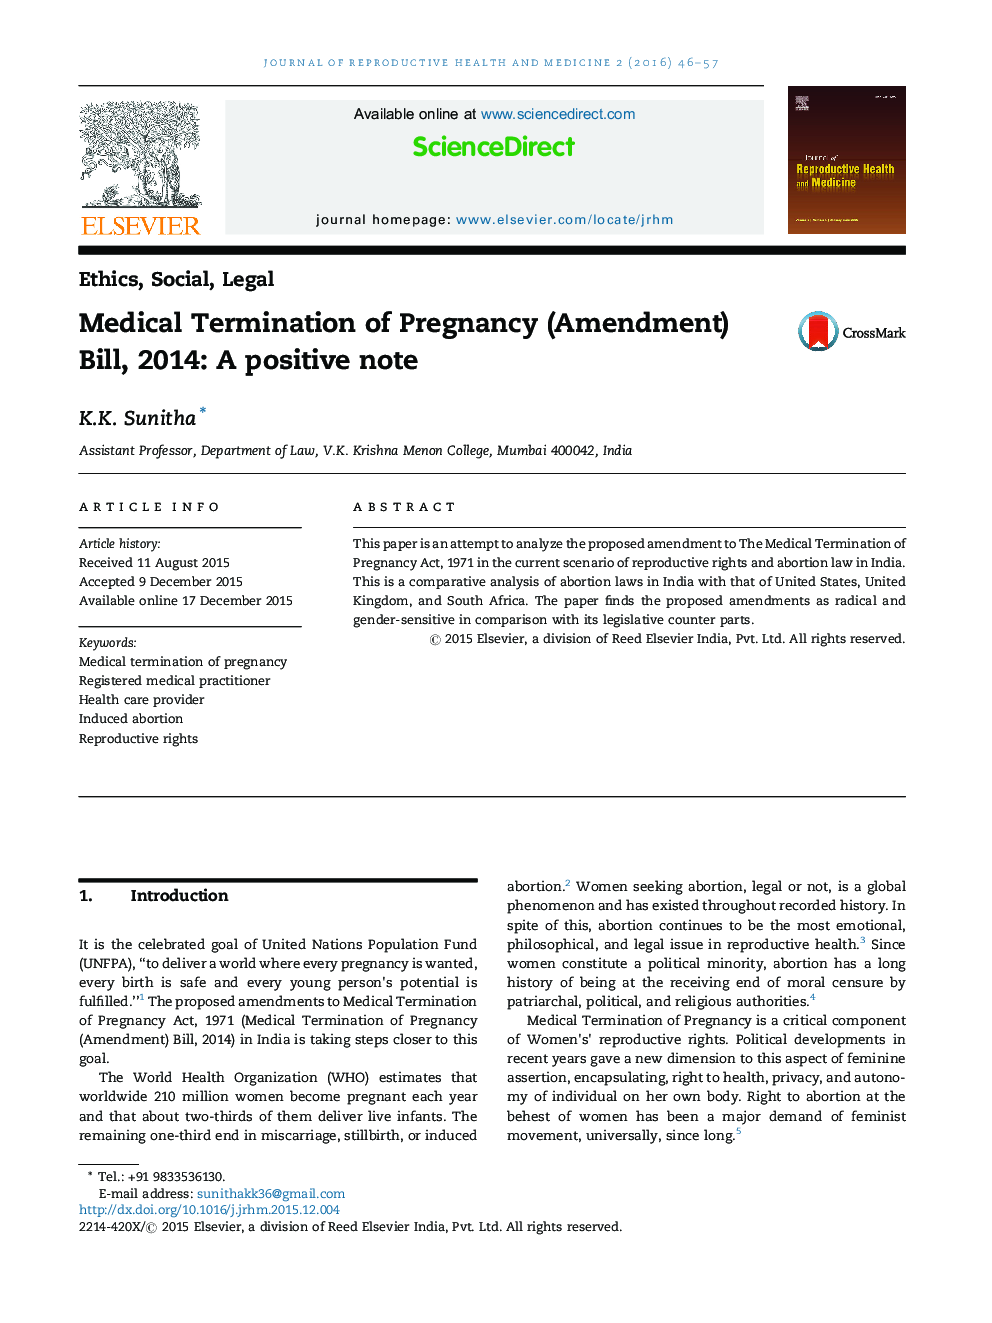 ختم پزشکی بارداری (اصلاحیه) بیل، 2014: یک نکته مثبت